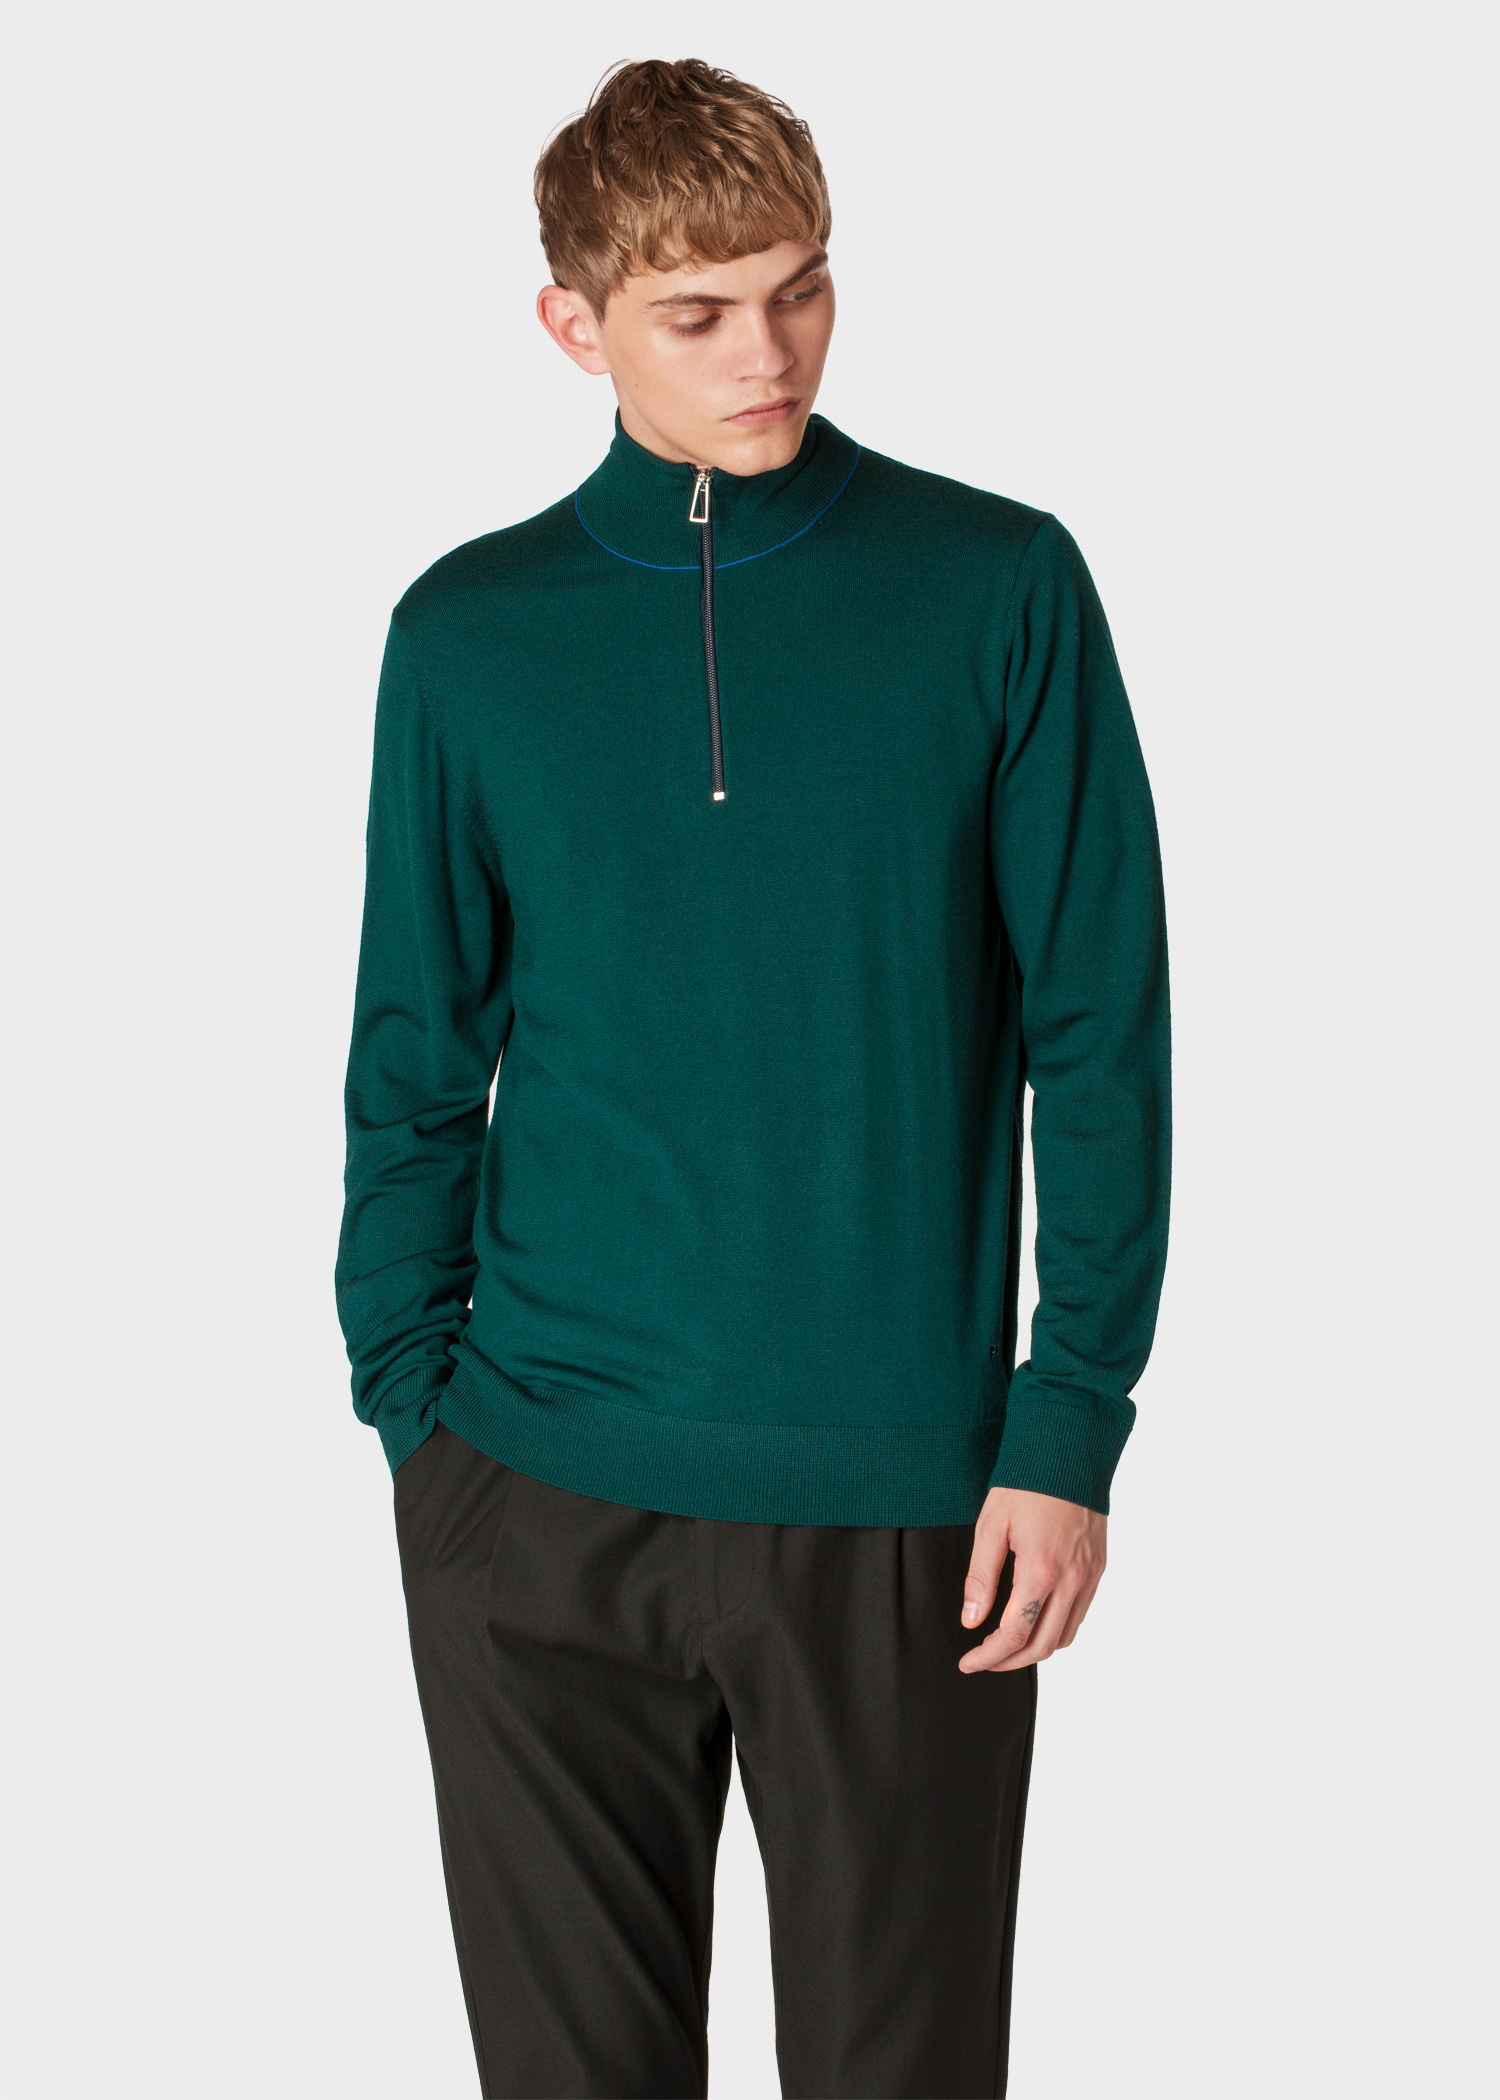 Model front close up - Men's Dark Green Half-Zip Merino Wool Sweater Paul Smith